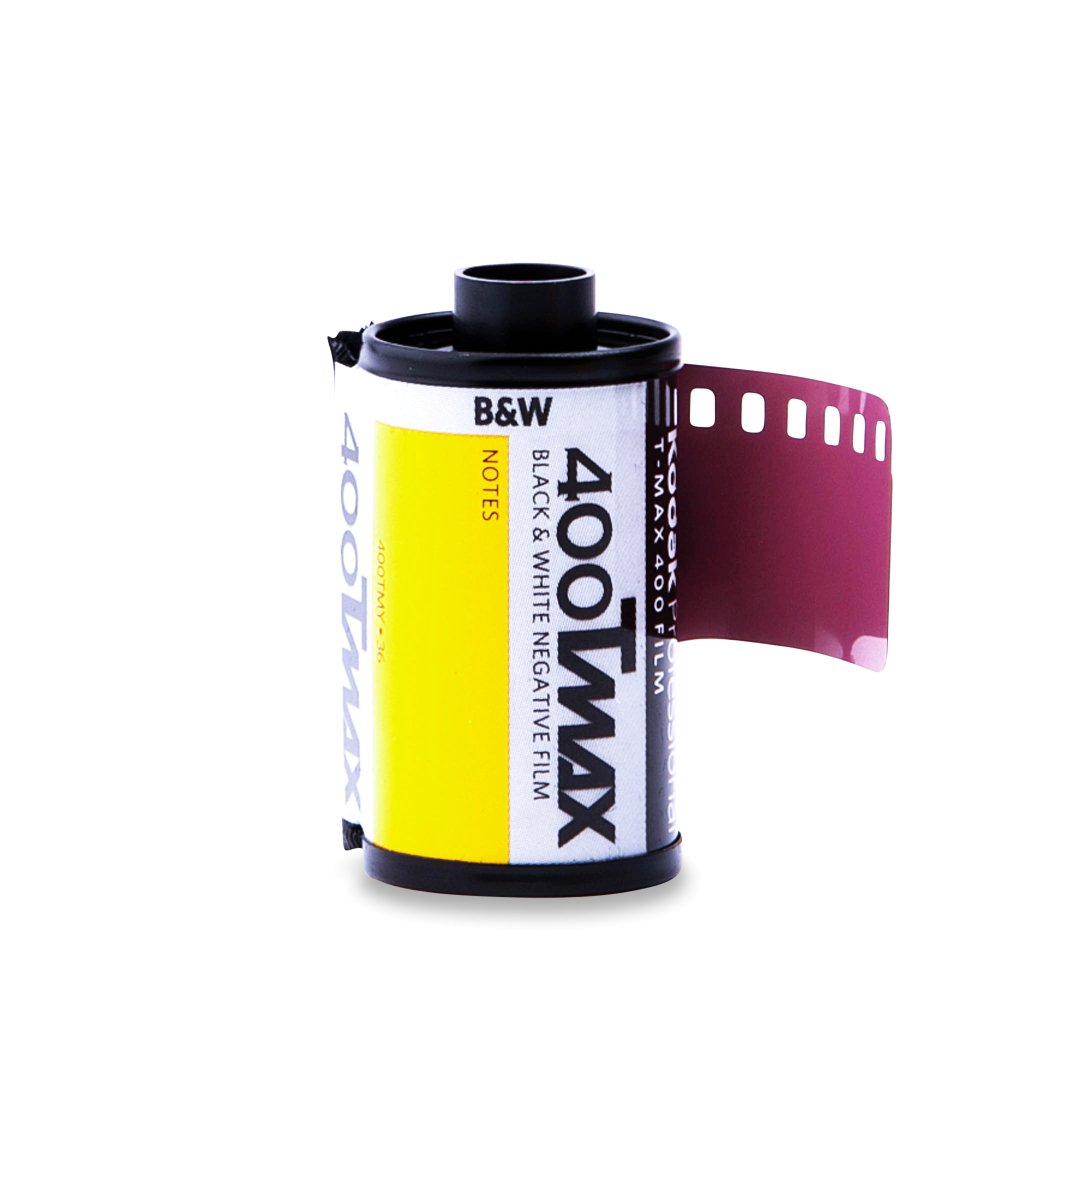 Kodak T-Max 400 - 35mm - 36 Exposure - Single Roll - Rewind Photo Lab - Kodak